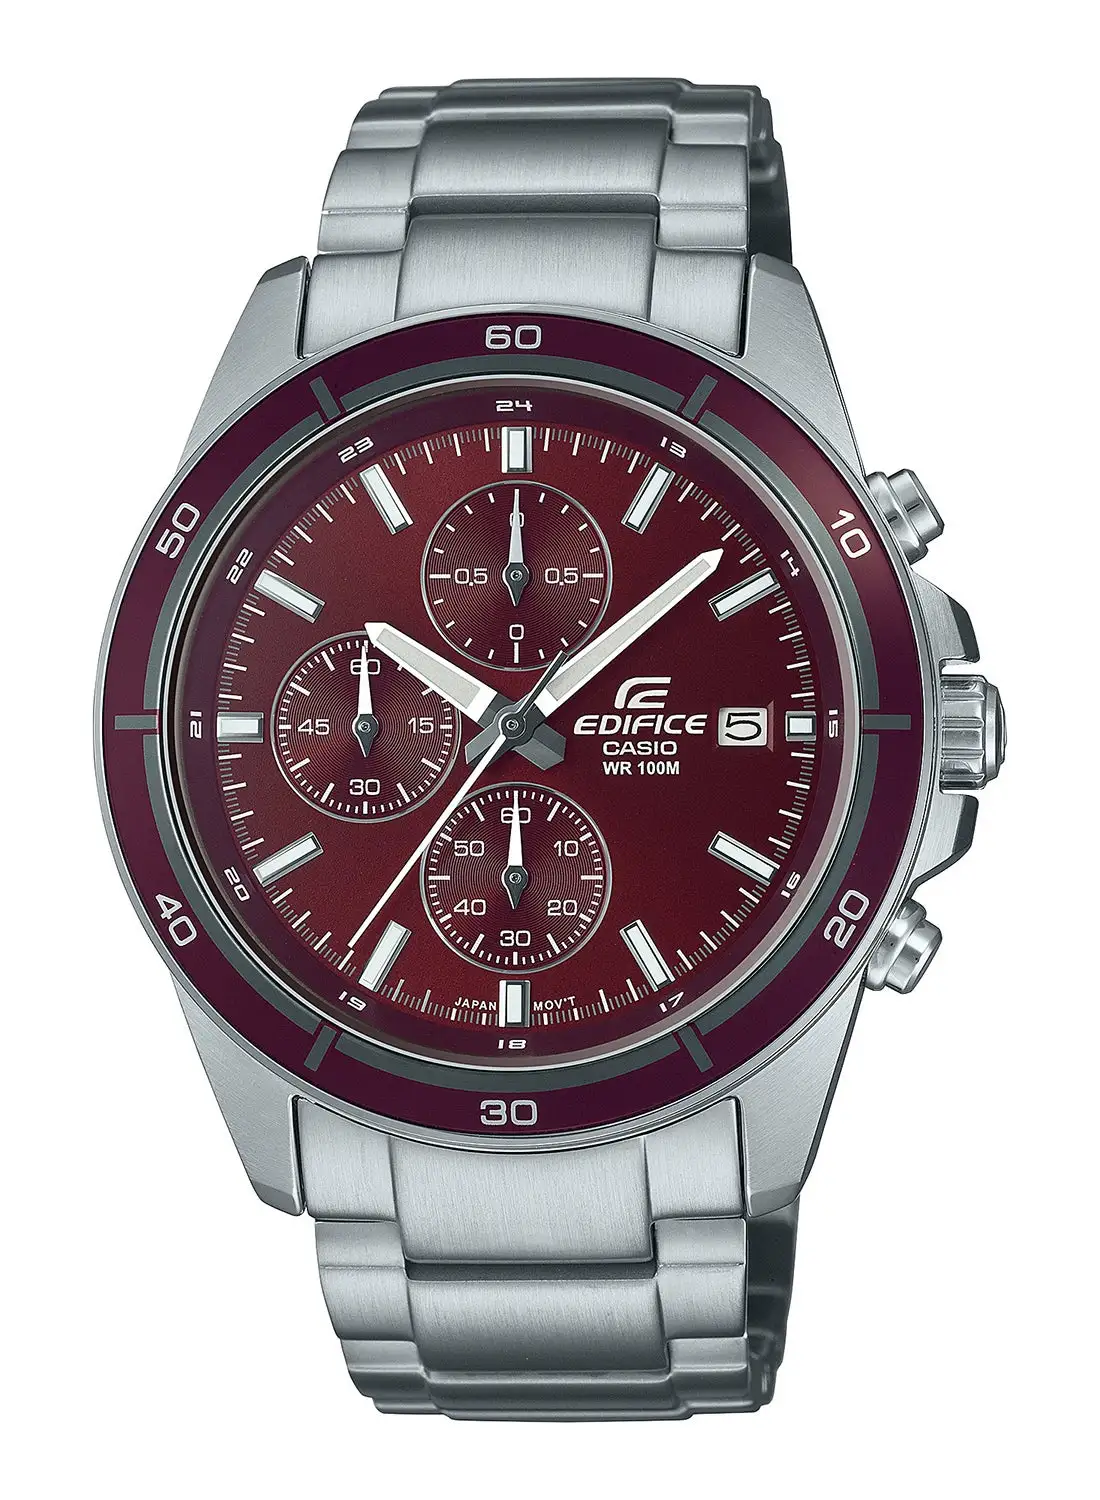 CASIO Men's Analog Stainless Steel Wrist Watch EFR-526D-5CVUDF - 42 Mm